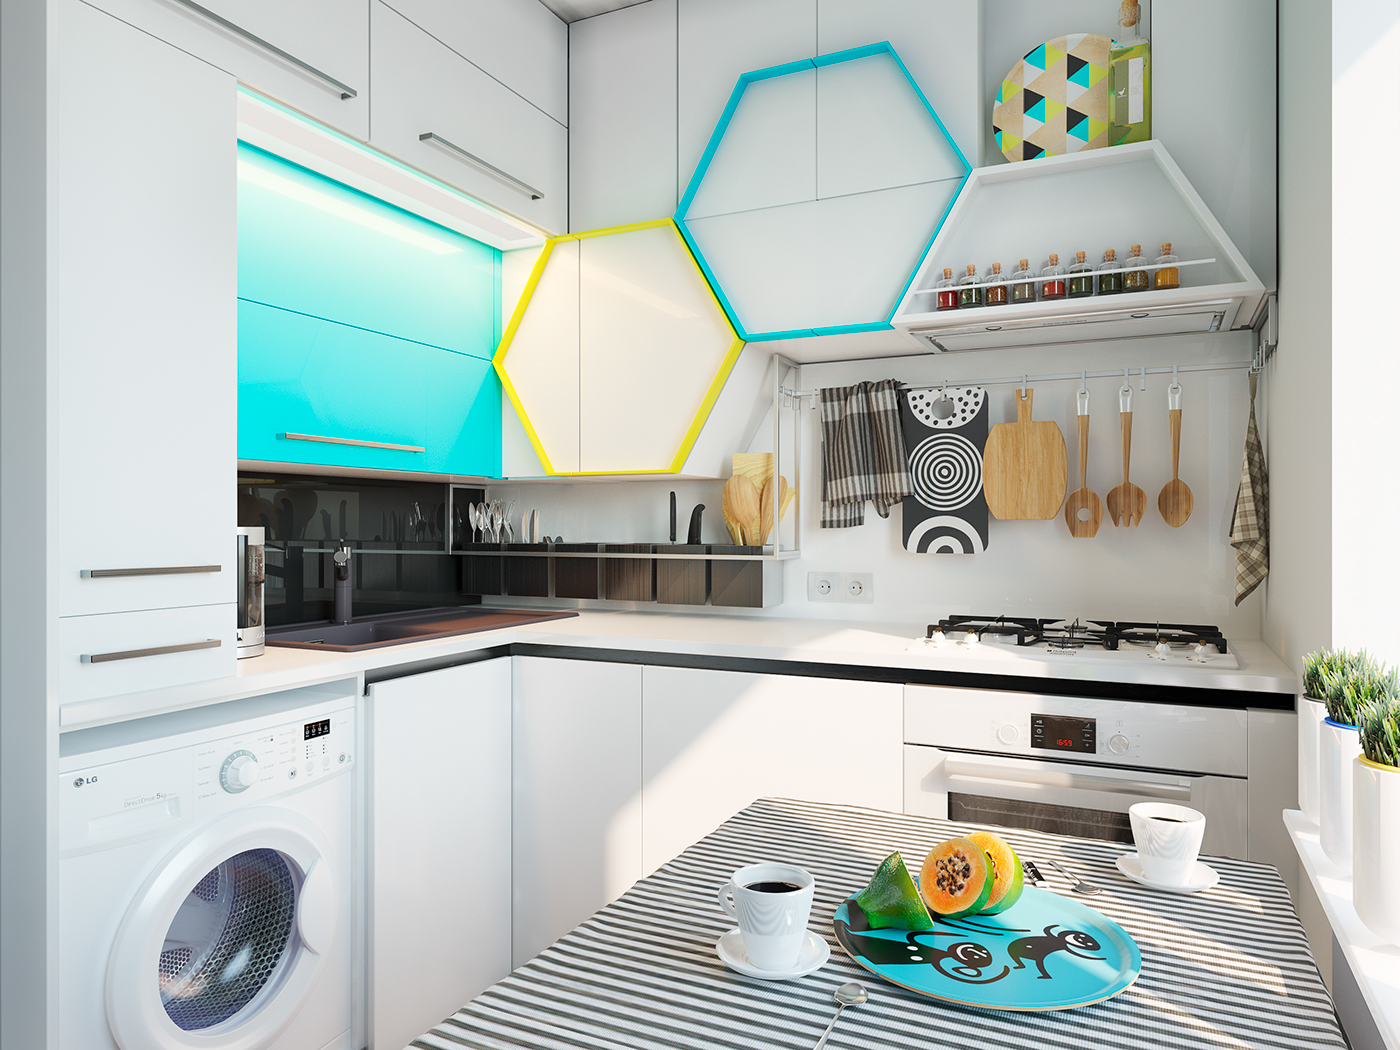 Hexagon kitchen on Behance